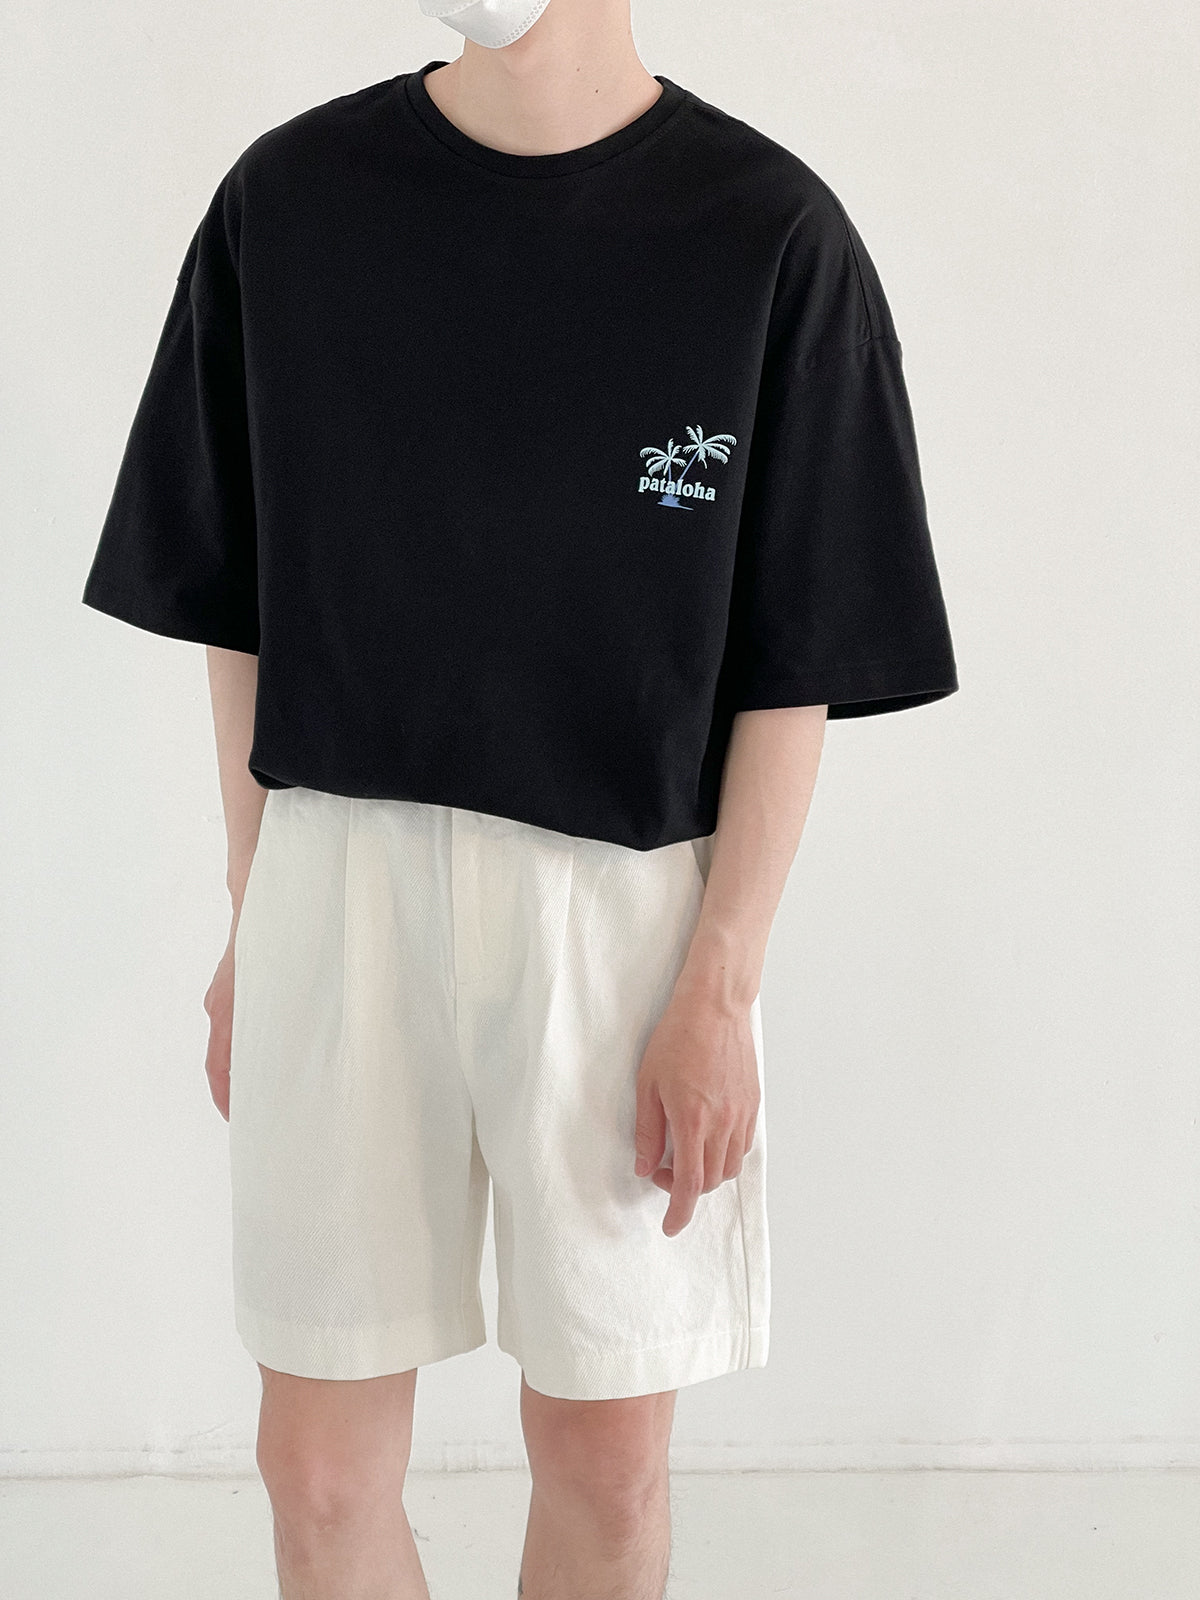 [Korean Style] 2 Color Cotton Casual Short Pants